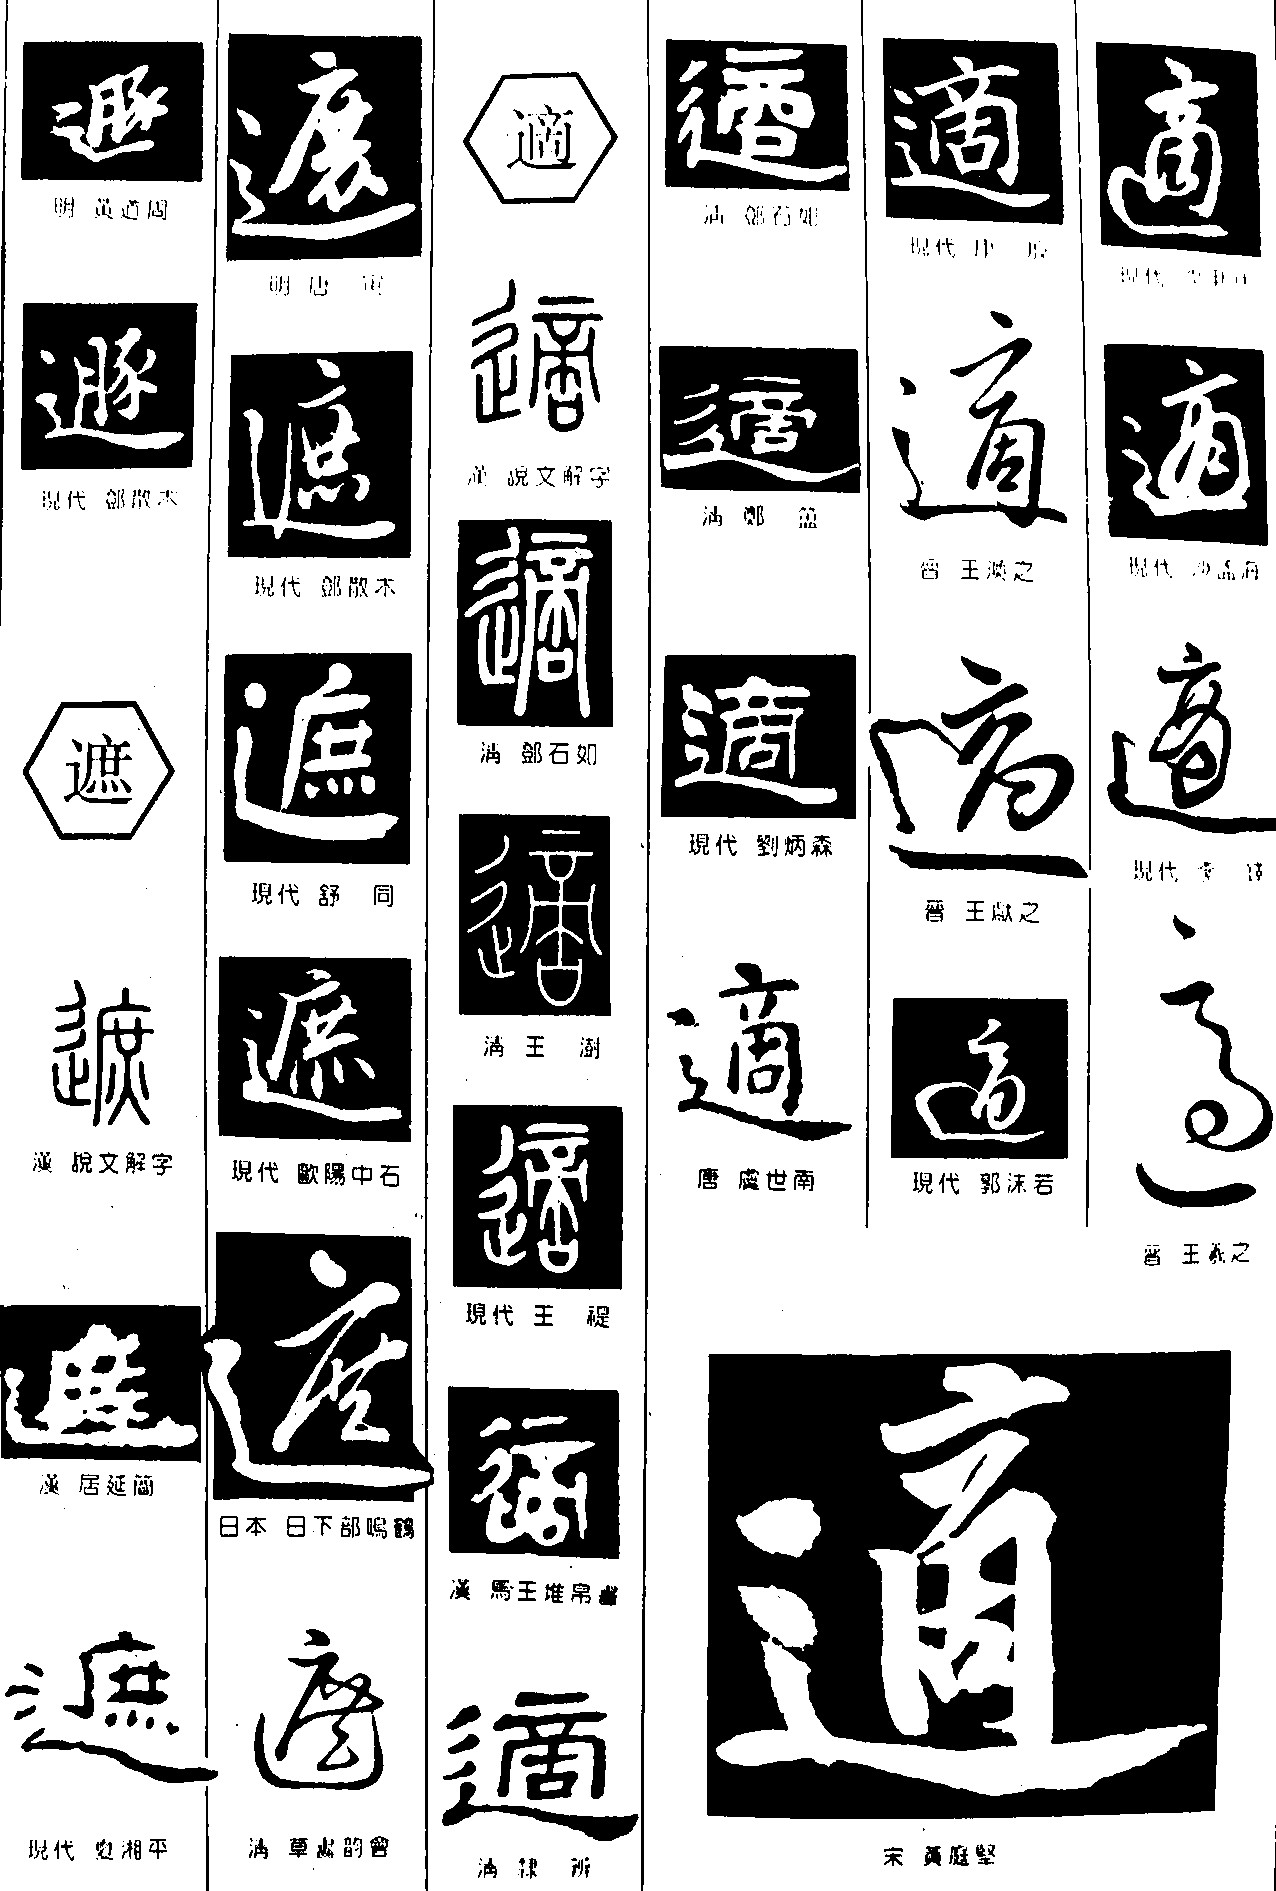 遯遮适_书法字体_字体设计作品-中国字体设计网_ziti.cndesign.com